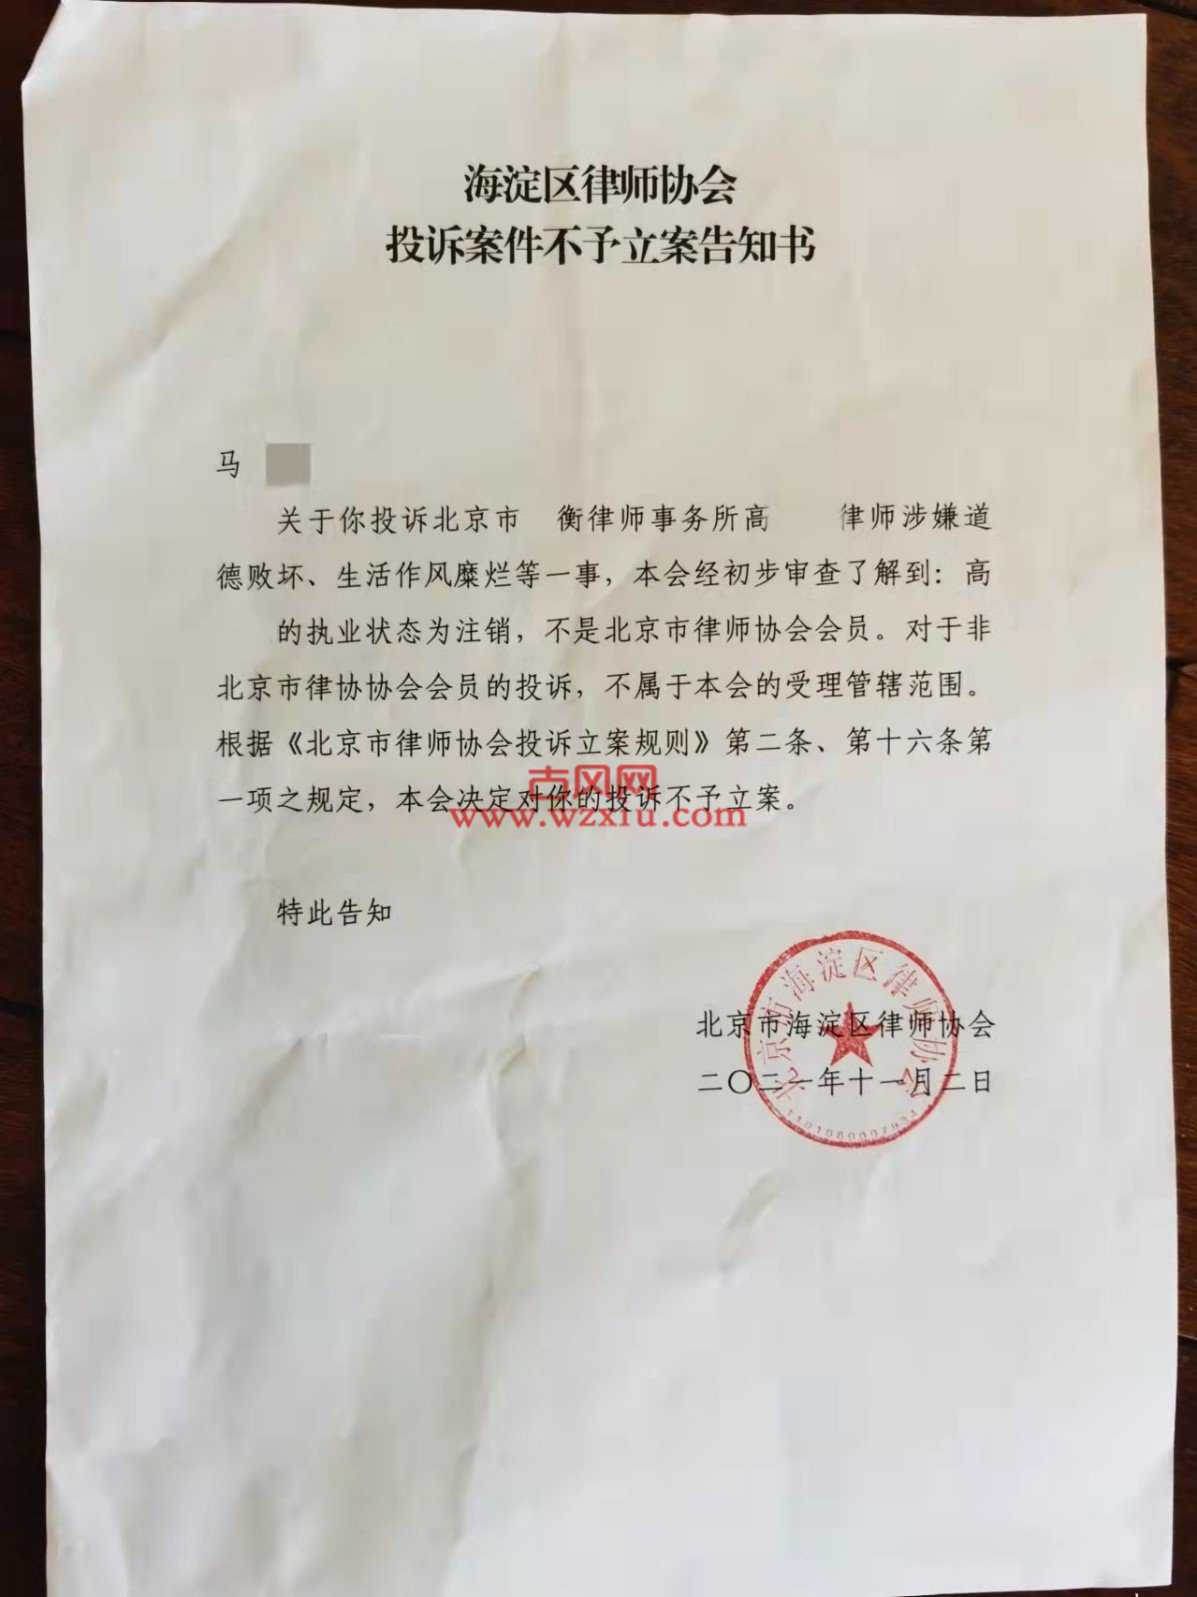 我向北京市司法局和律师协会举报了我的老公